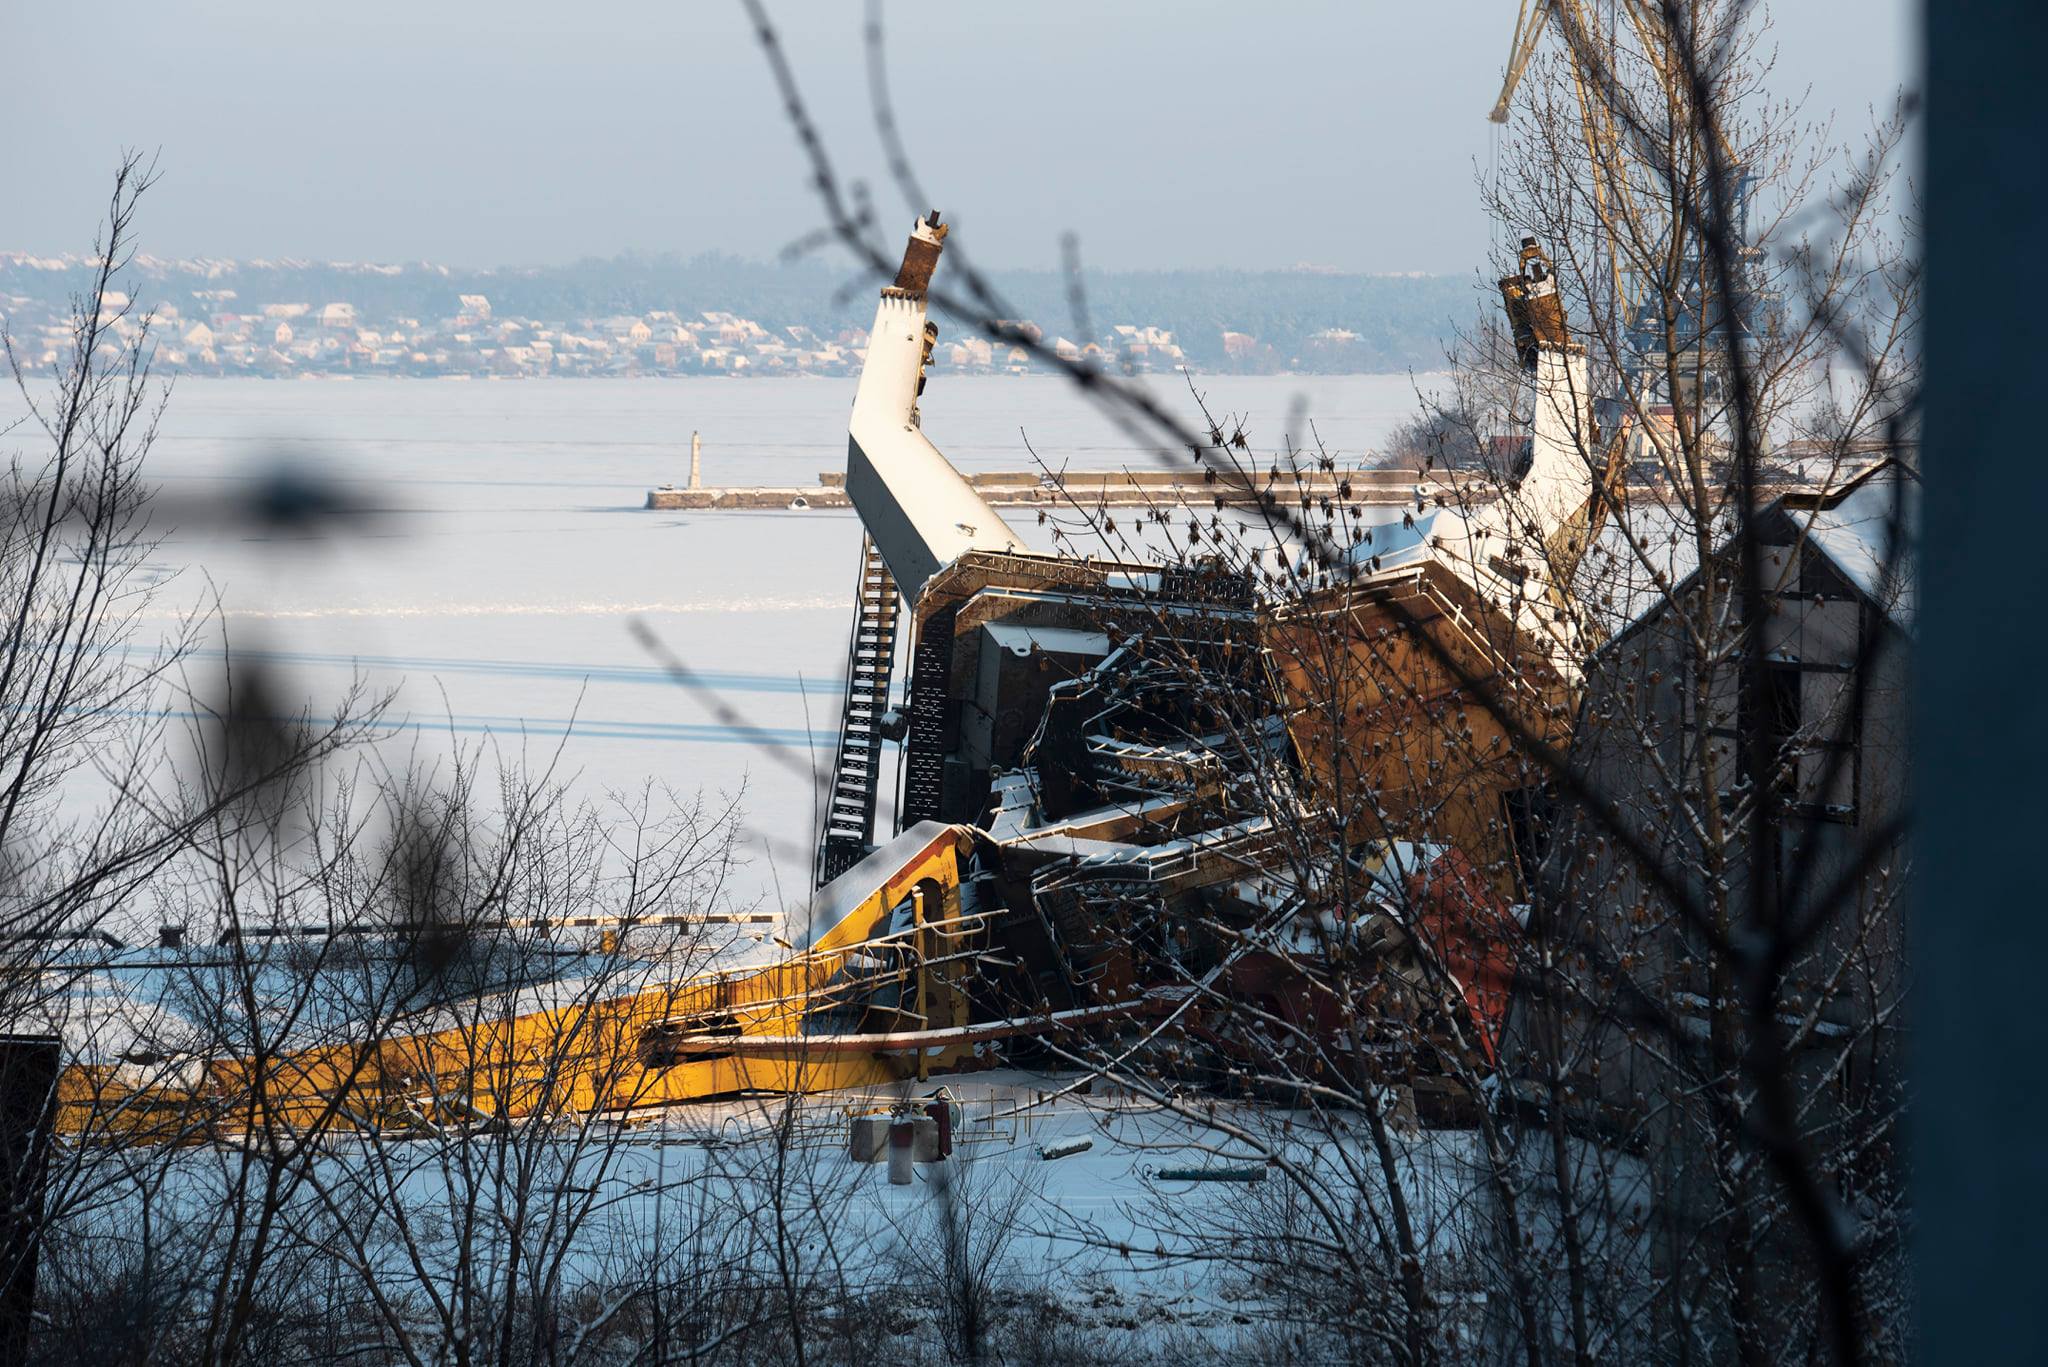 Запорожский фотограф опубликовал снимки разрушенного крана в порту Ленина, – ФОТО